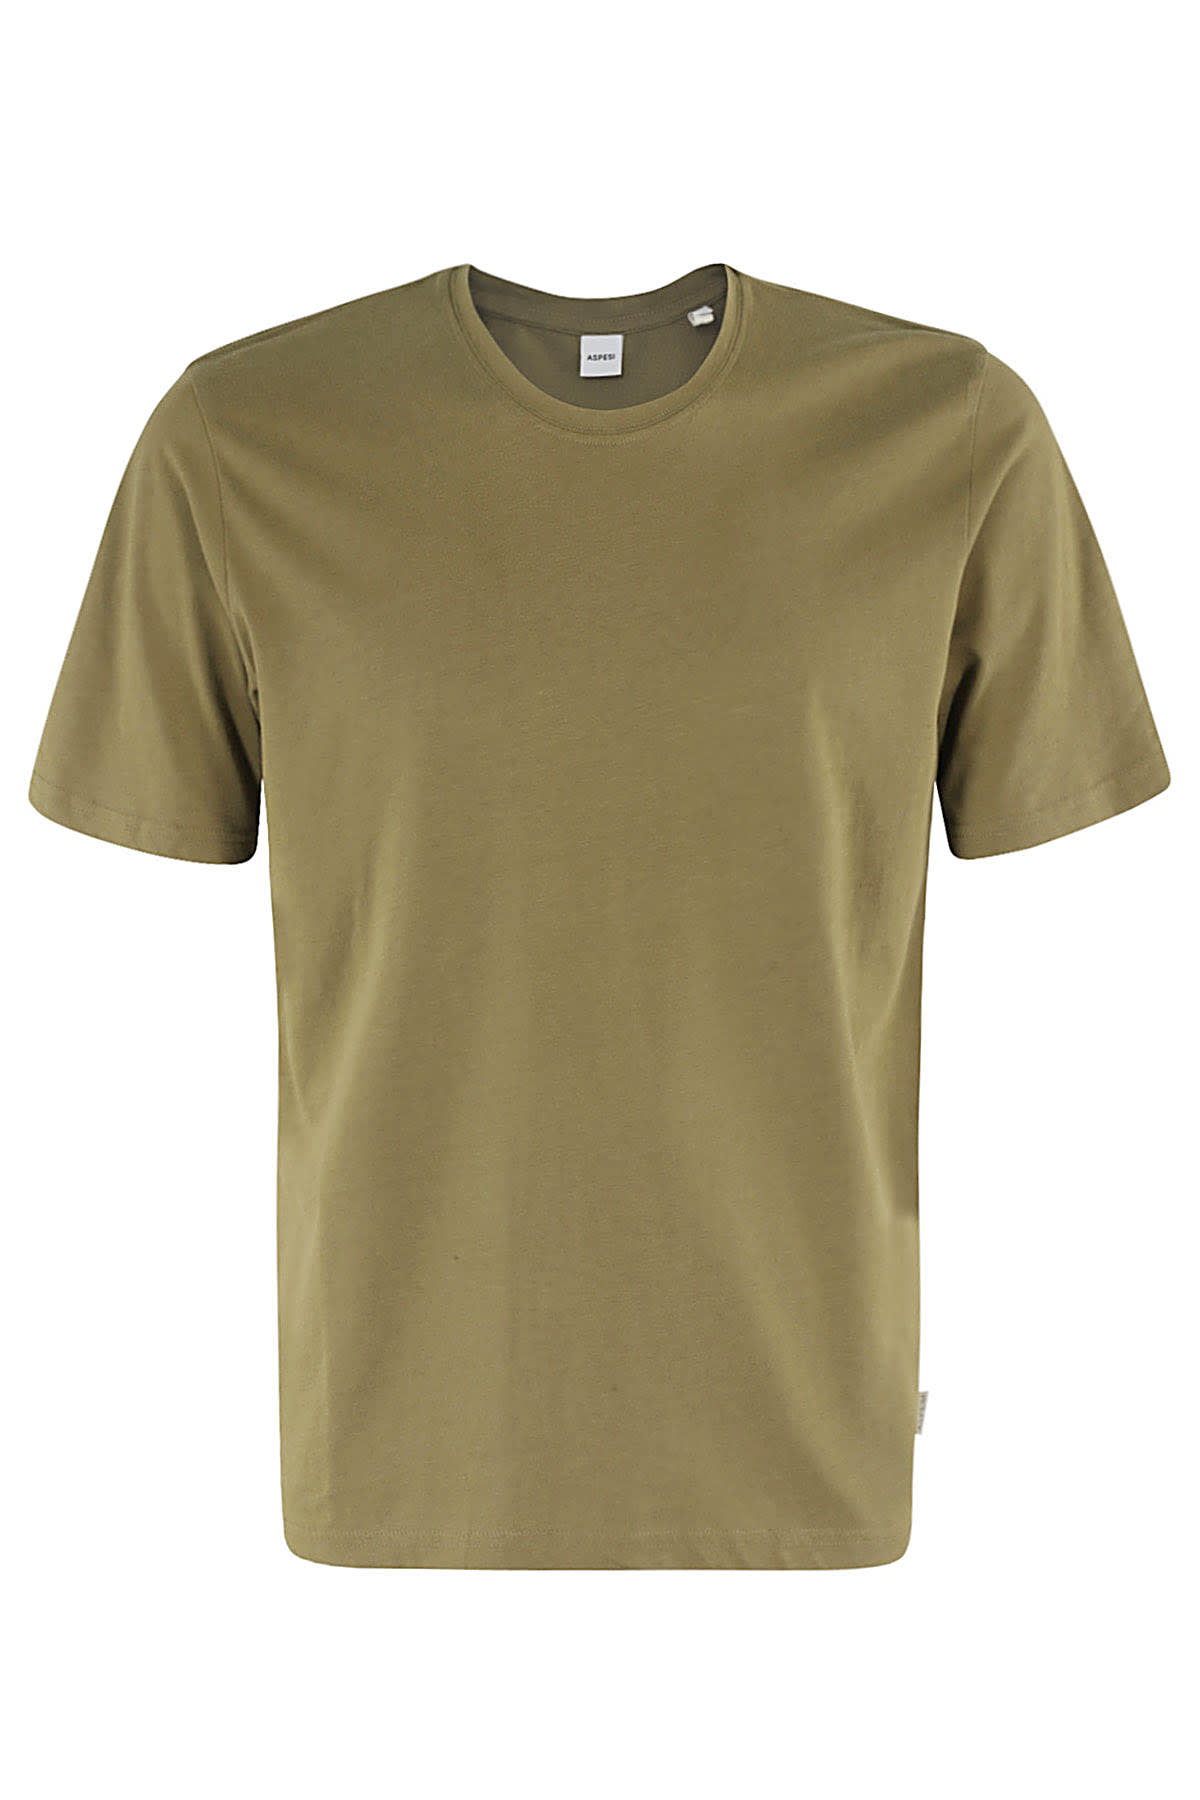 T - Shirt Mod 3107